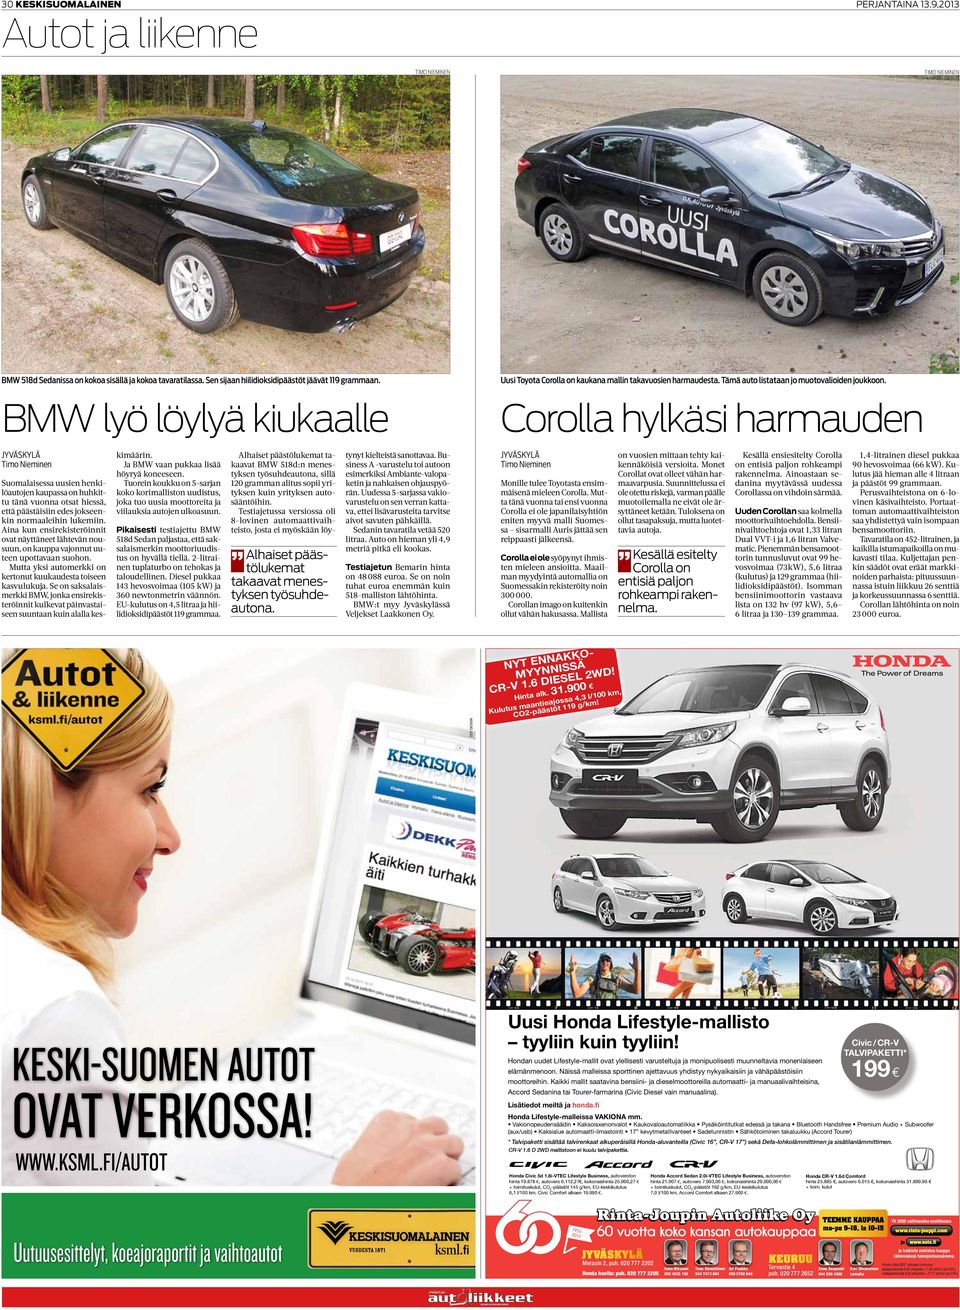 BMW lyö löylyä kiukaalle Corolla hylkäsi harmauden Suomalaisessa uusien henkilöautojen kaupassa on huhkittu tänä vuonna otsat hiessä, että päästäisiin edes jokseenkin normaaleihin lukemiin.